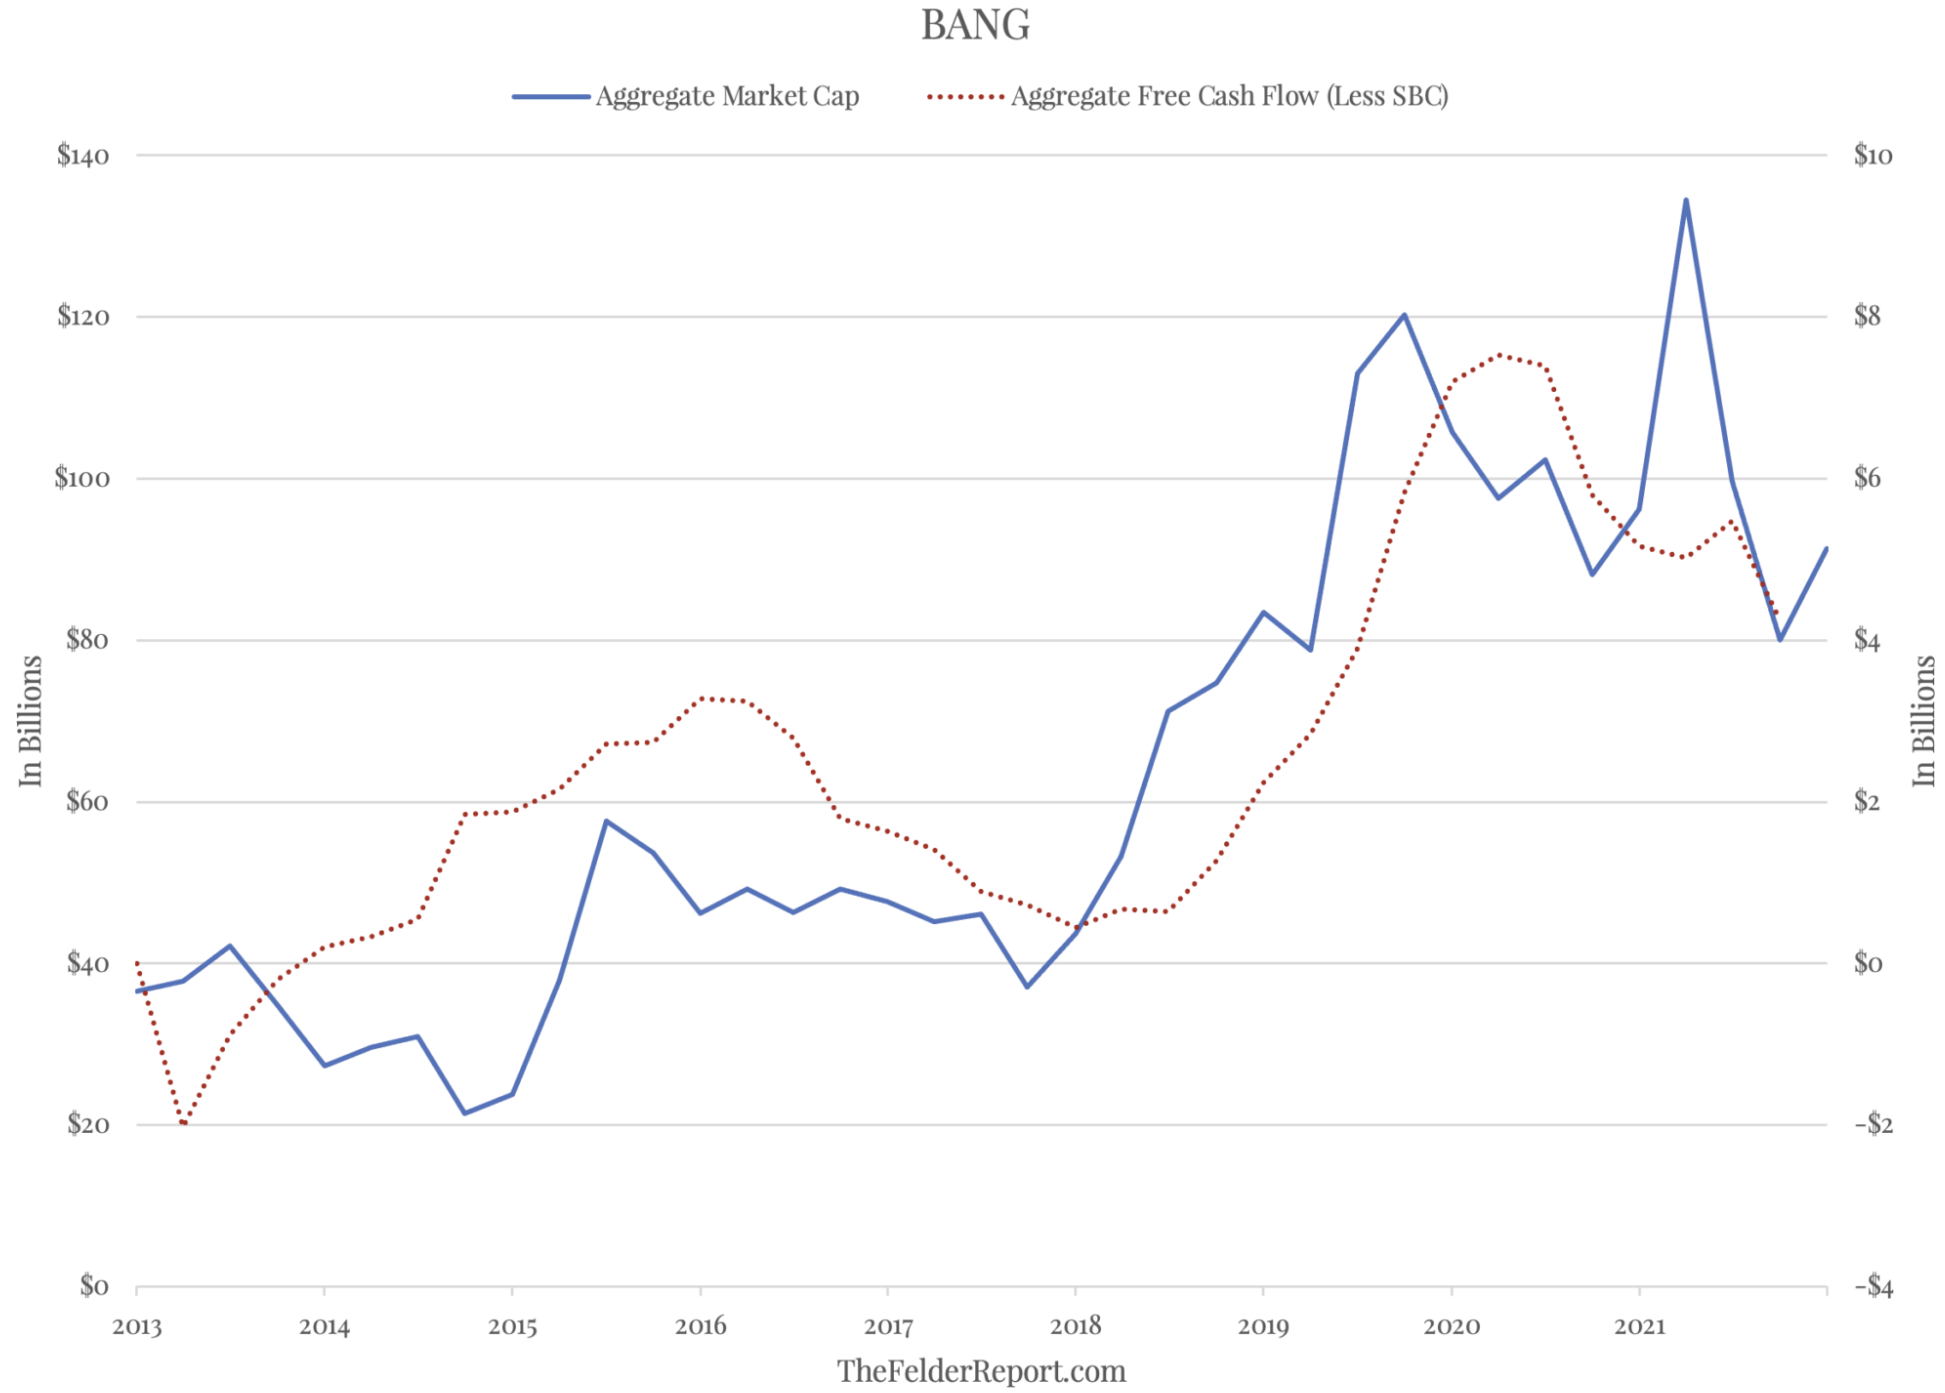 BANG Market Cap Vs. Free Cash Flow